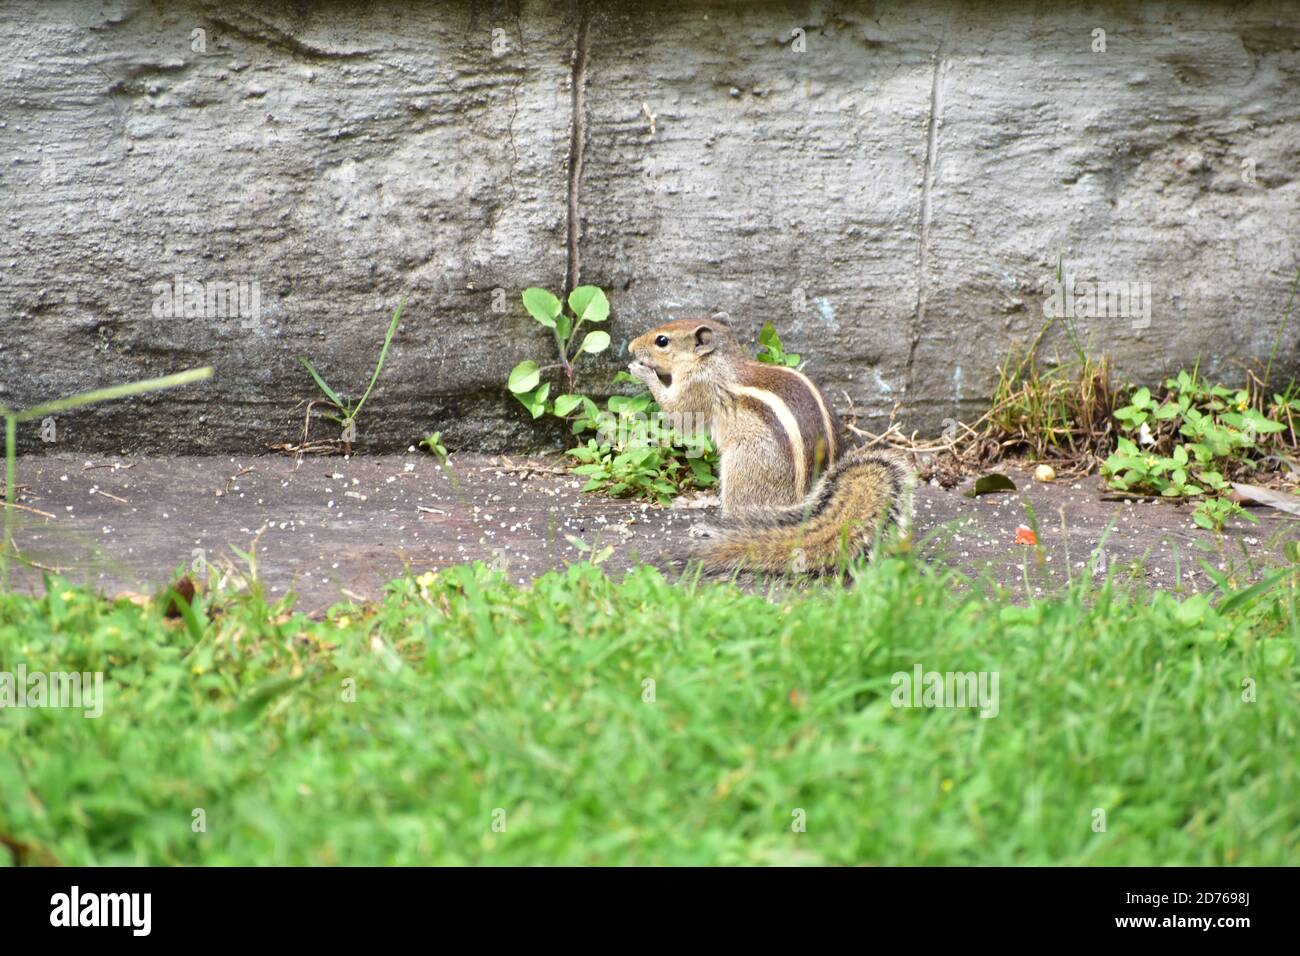 Un écureuil mangeant de la nourriture dans un parc. Herbe verte tout autour de lui Banque D'Images